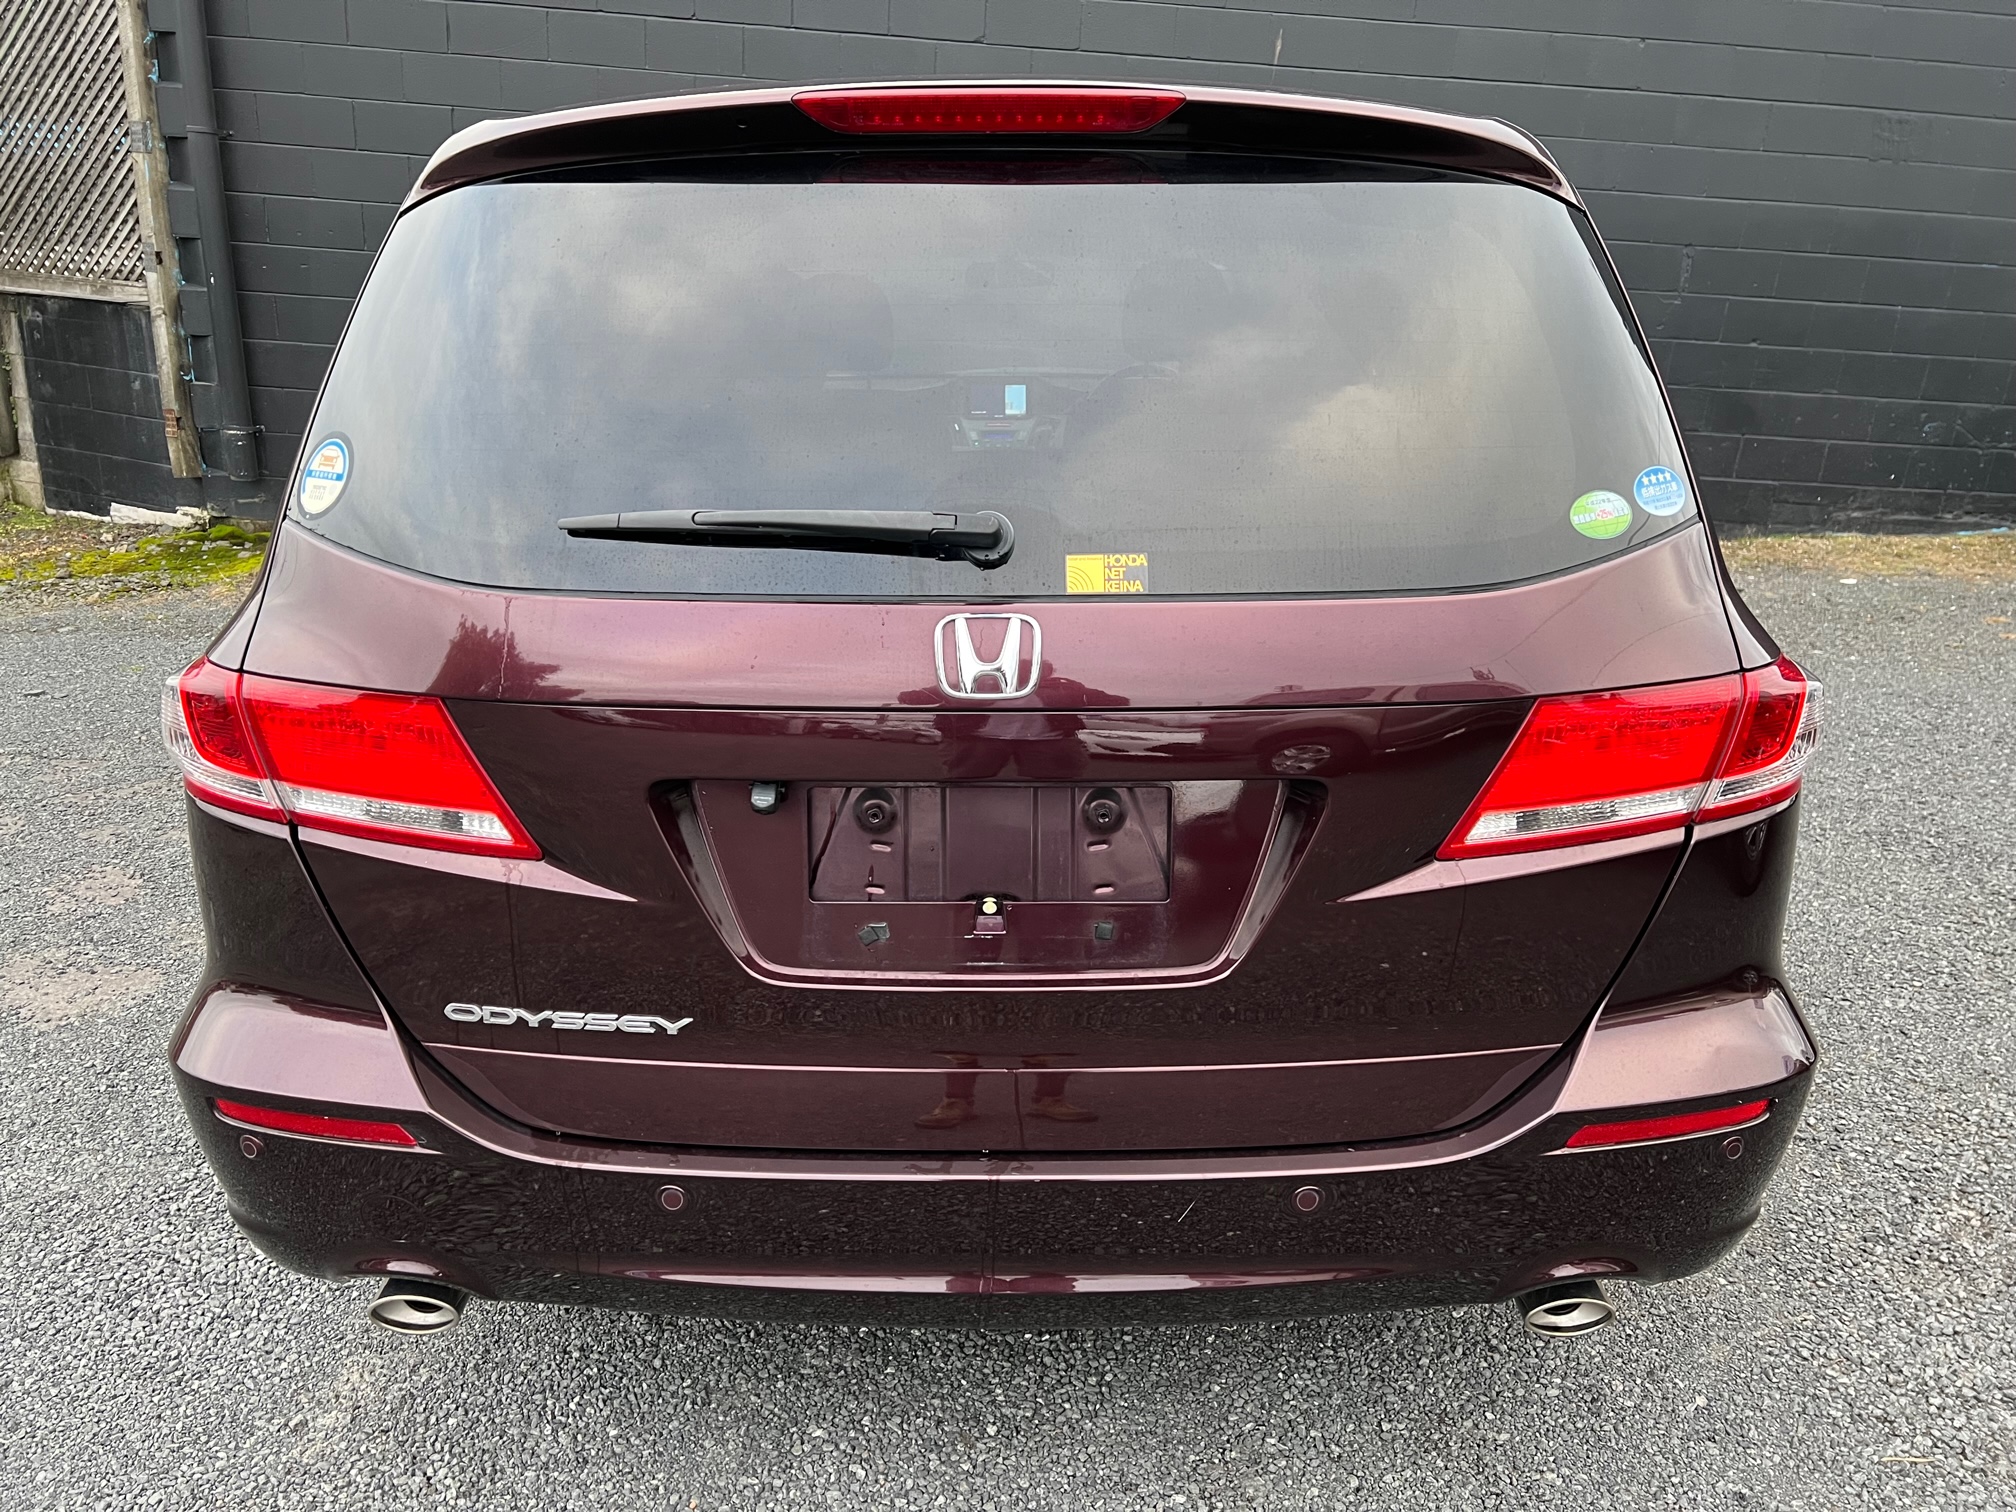 Honda Odyssey 2009 Image 4